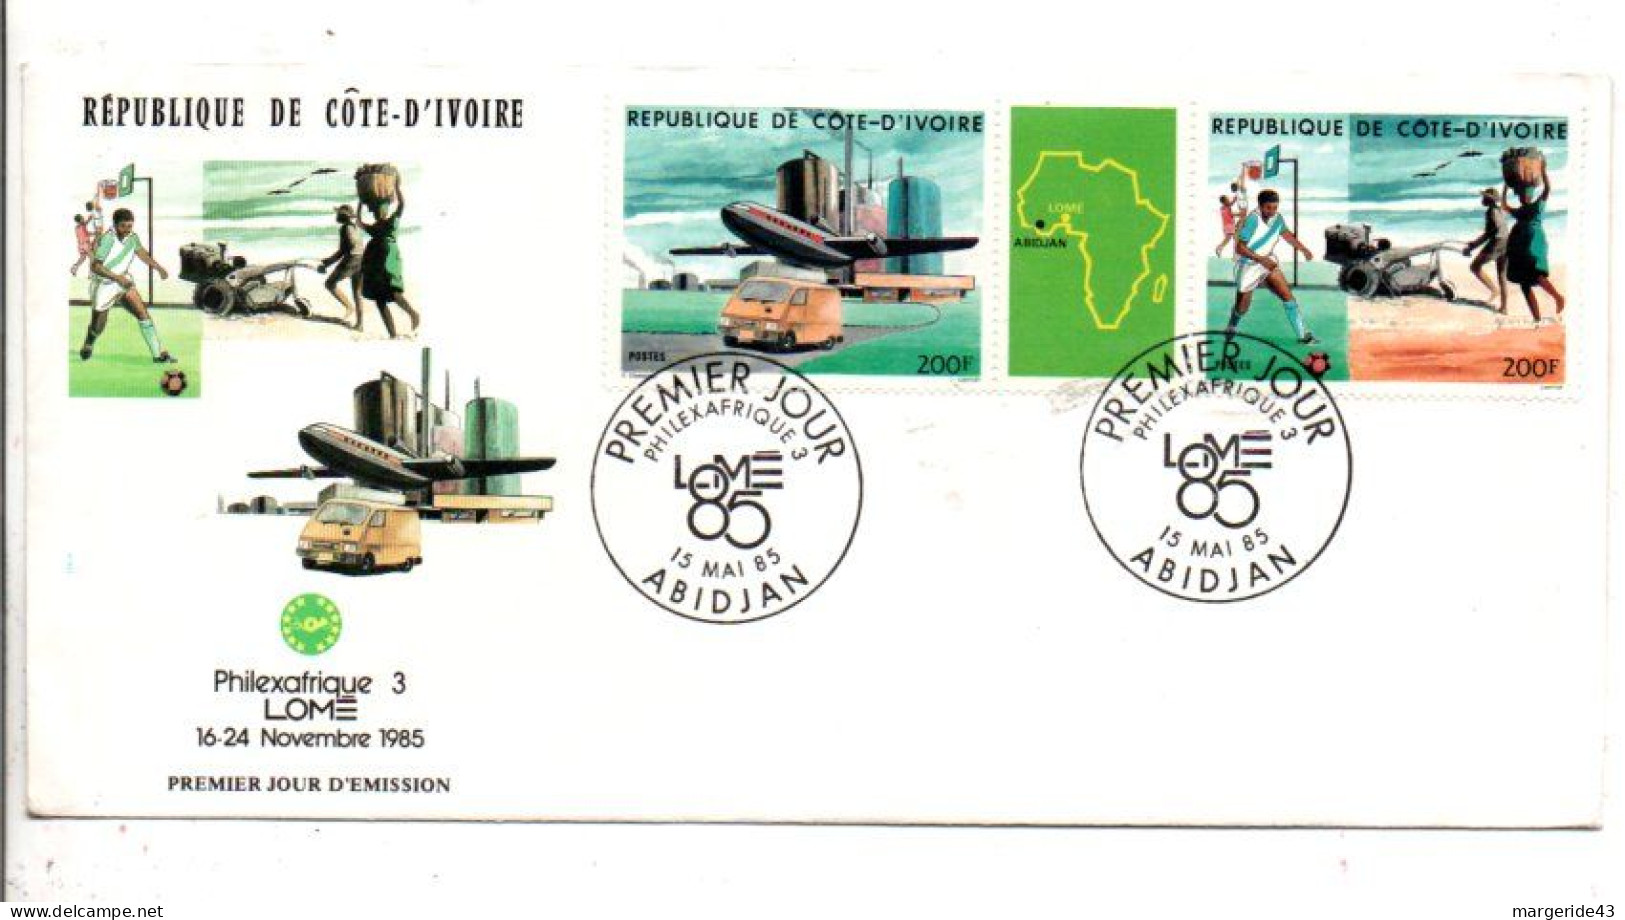 COTE D'IVOIRE FDC EXPO PHILEXAFRIQUE 3 à LOME - Briefmarkenausstellungen